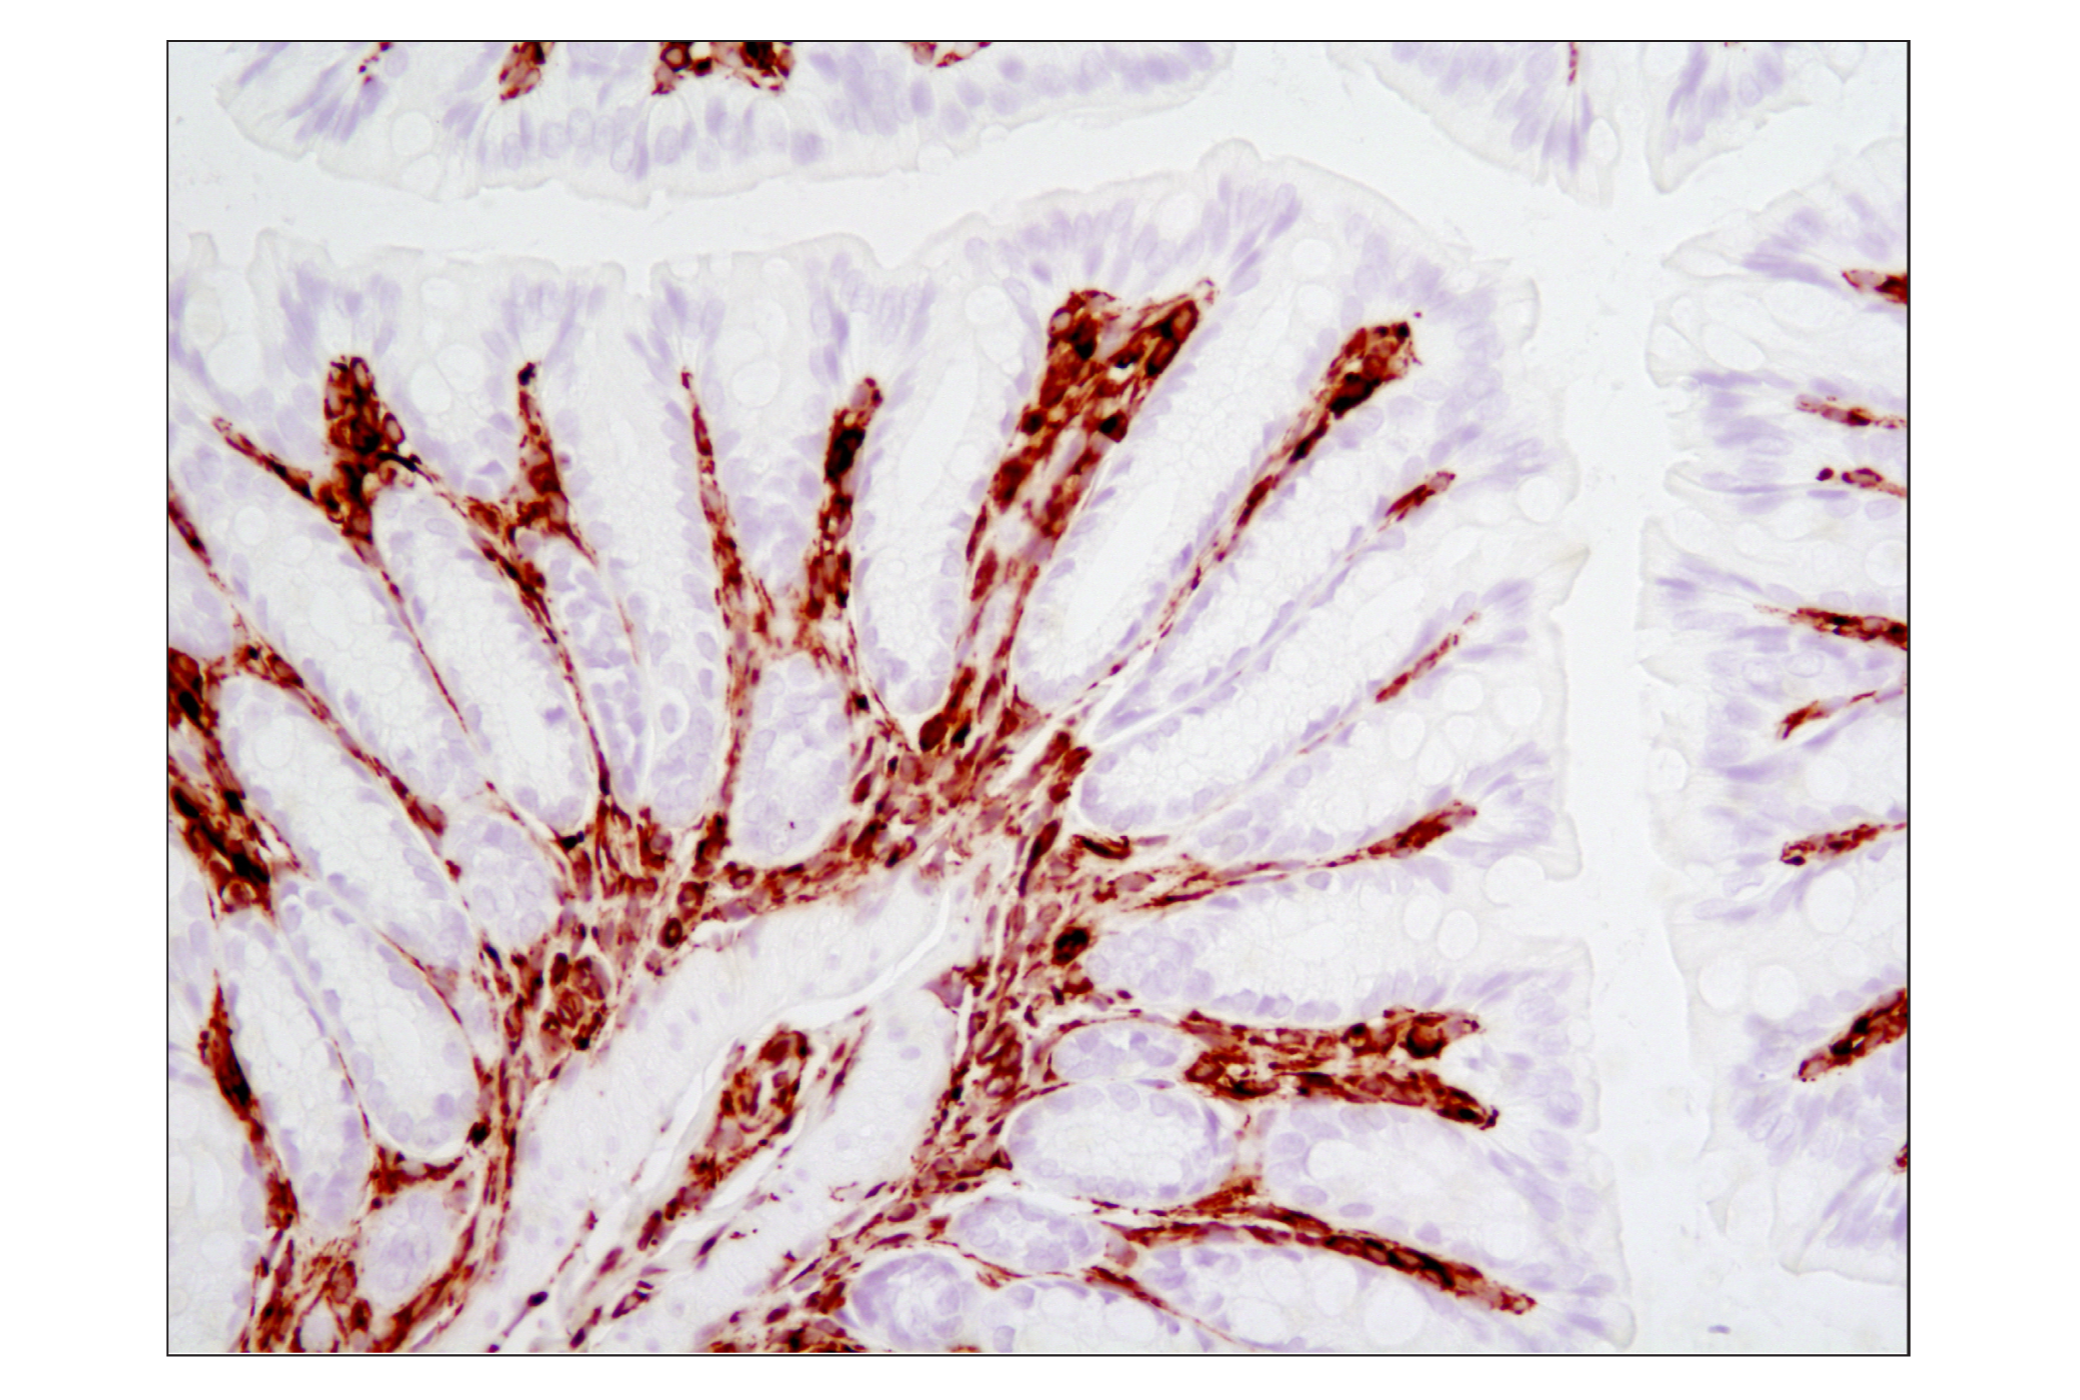  Image 34: Cell Fractionation Antibody Sampler Kit